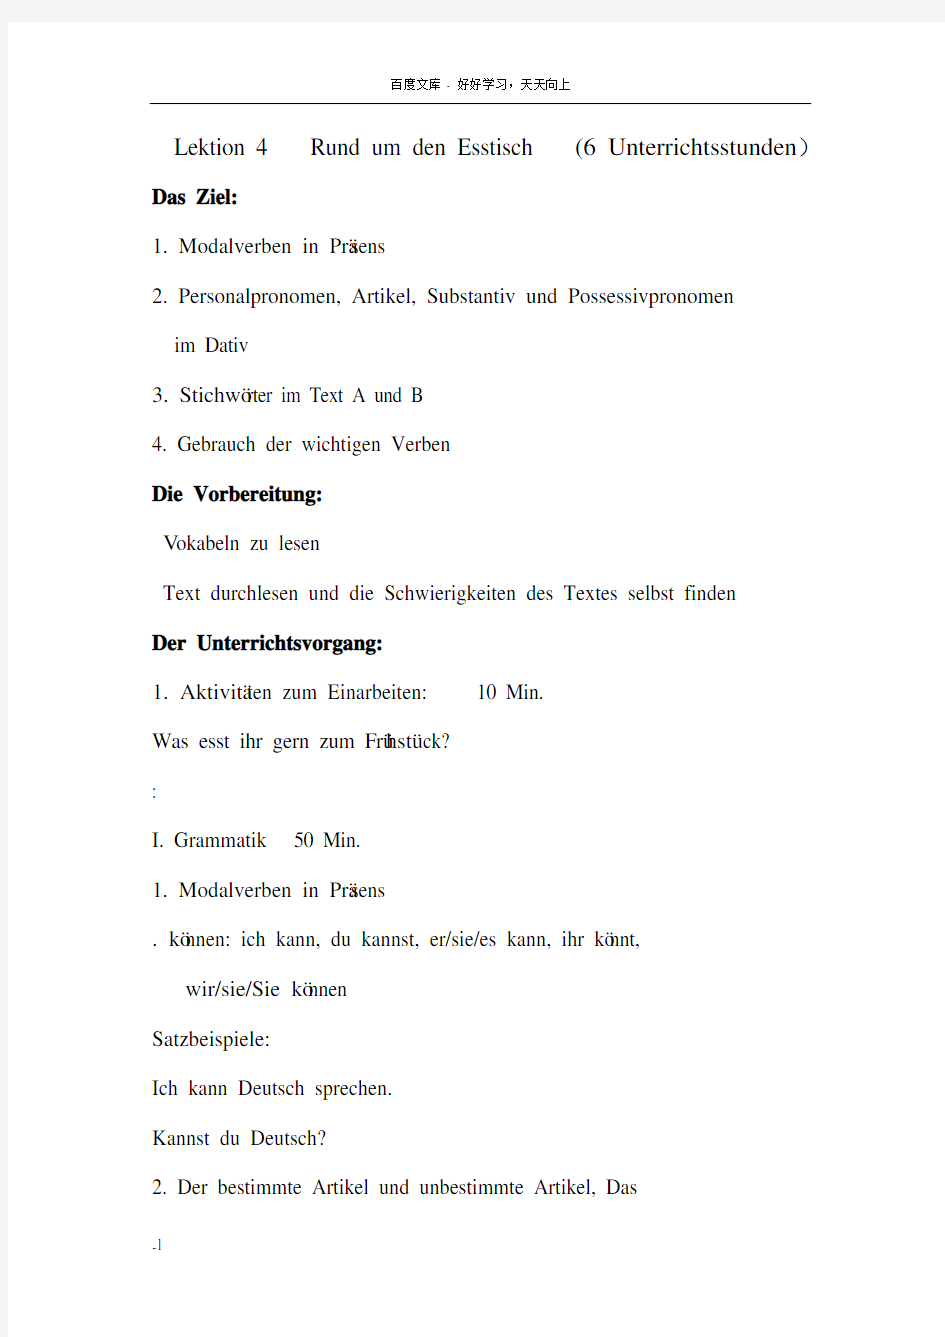 大学通用德语1教案4课Lektion4RundumdenEsstisch(6Unterrichtss